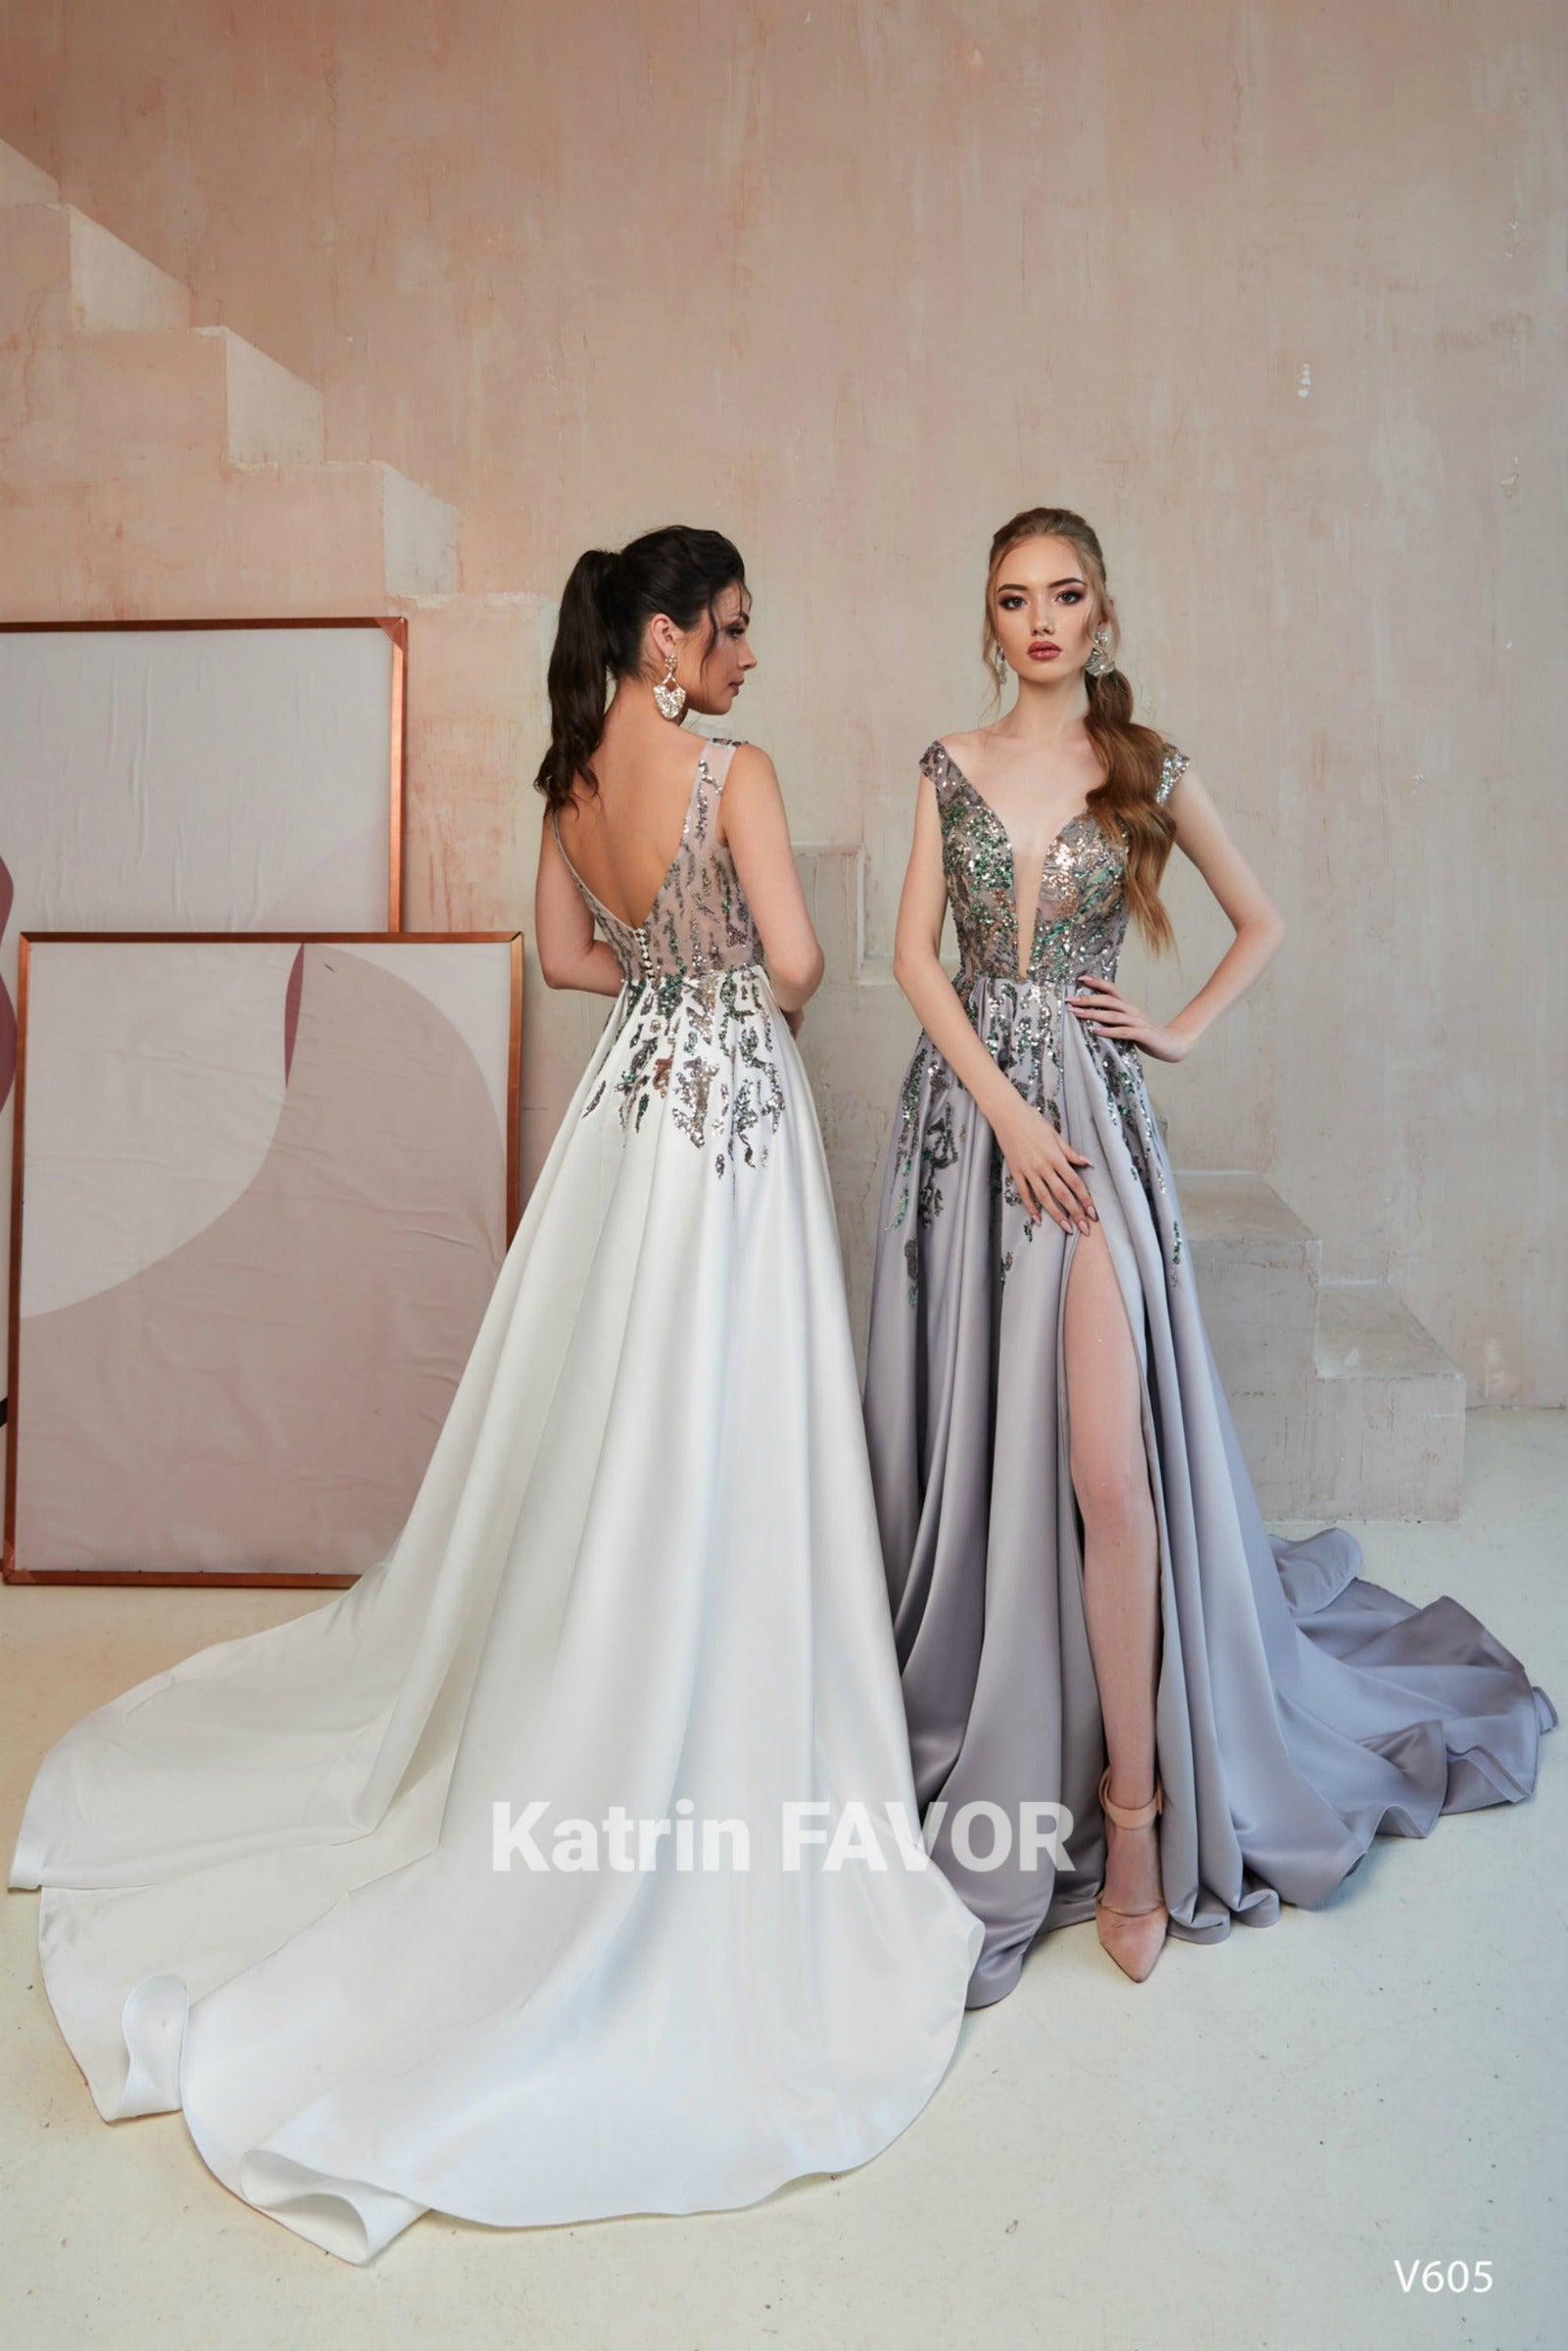 KatrinFAVORboutique-Long formal dresses for women Alternative wedding wear